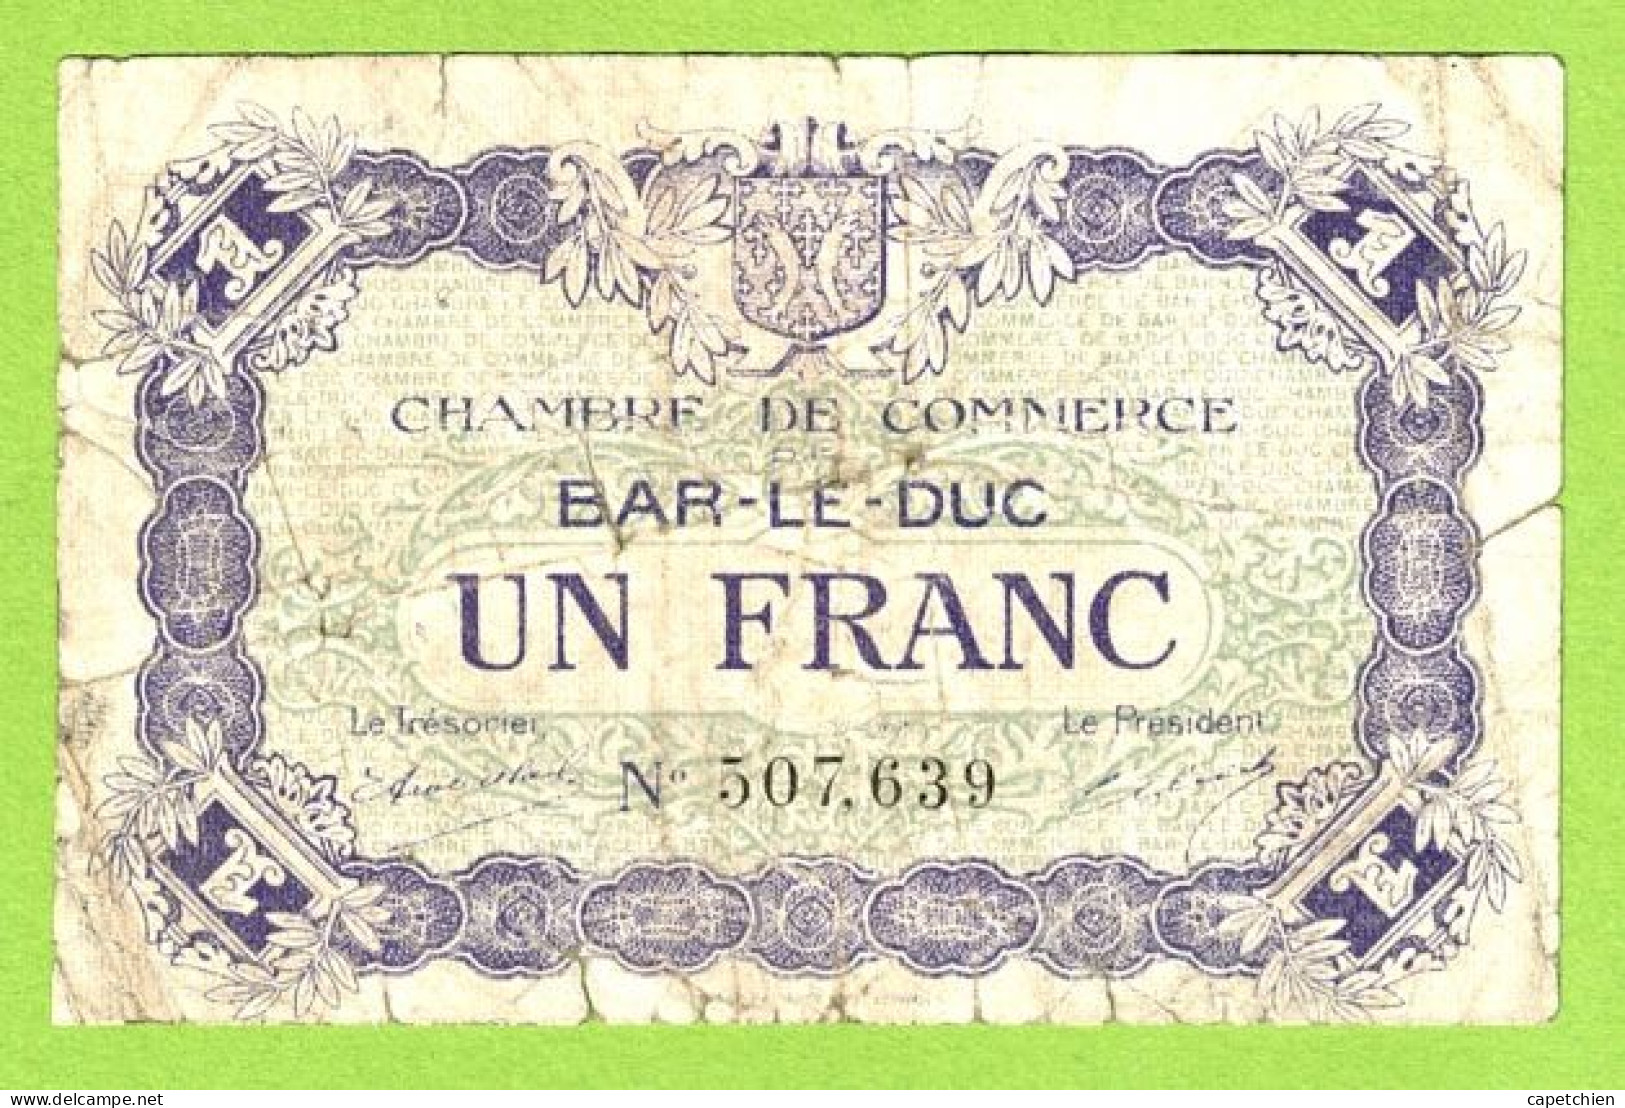 FRANCE / CHAMBRE DE COMMERCE / BAR LE DUC / 1 FRANC /  1 Er SEPTEMBRE 1917  / 3ème EMISSION / N° 507639 - Chamber Of Commerce